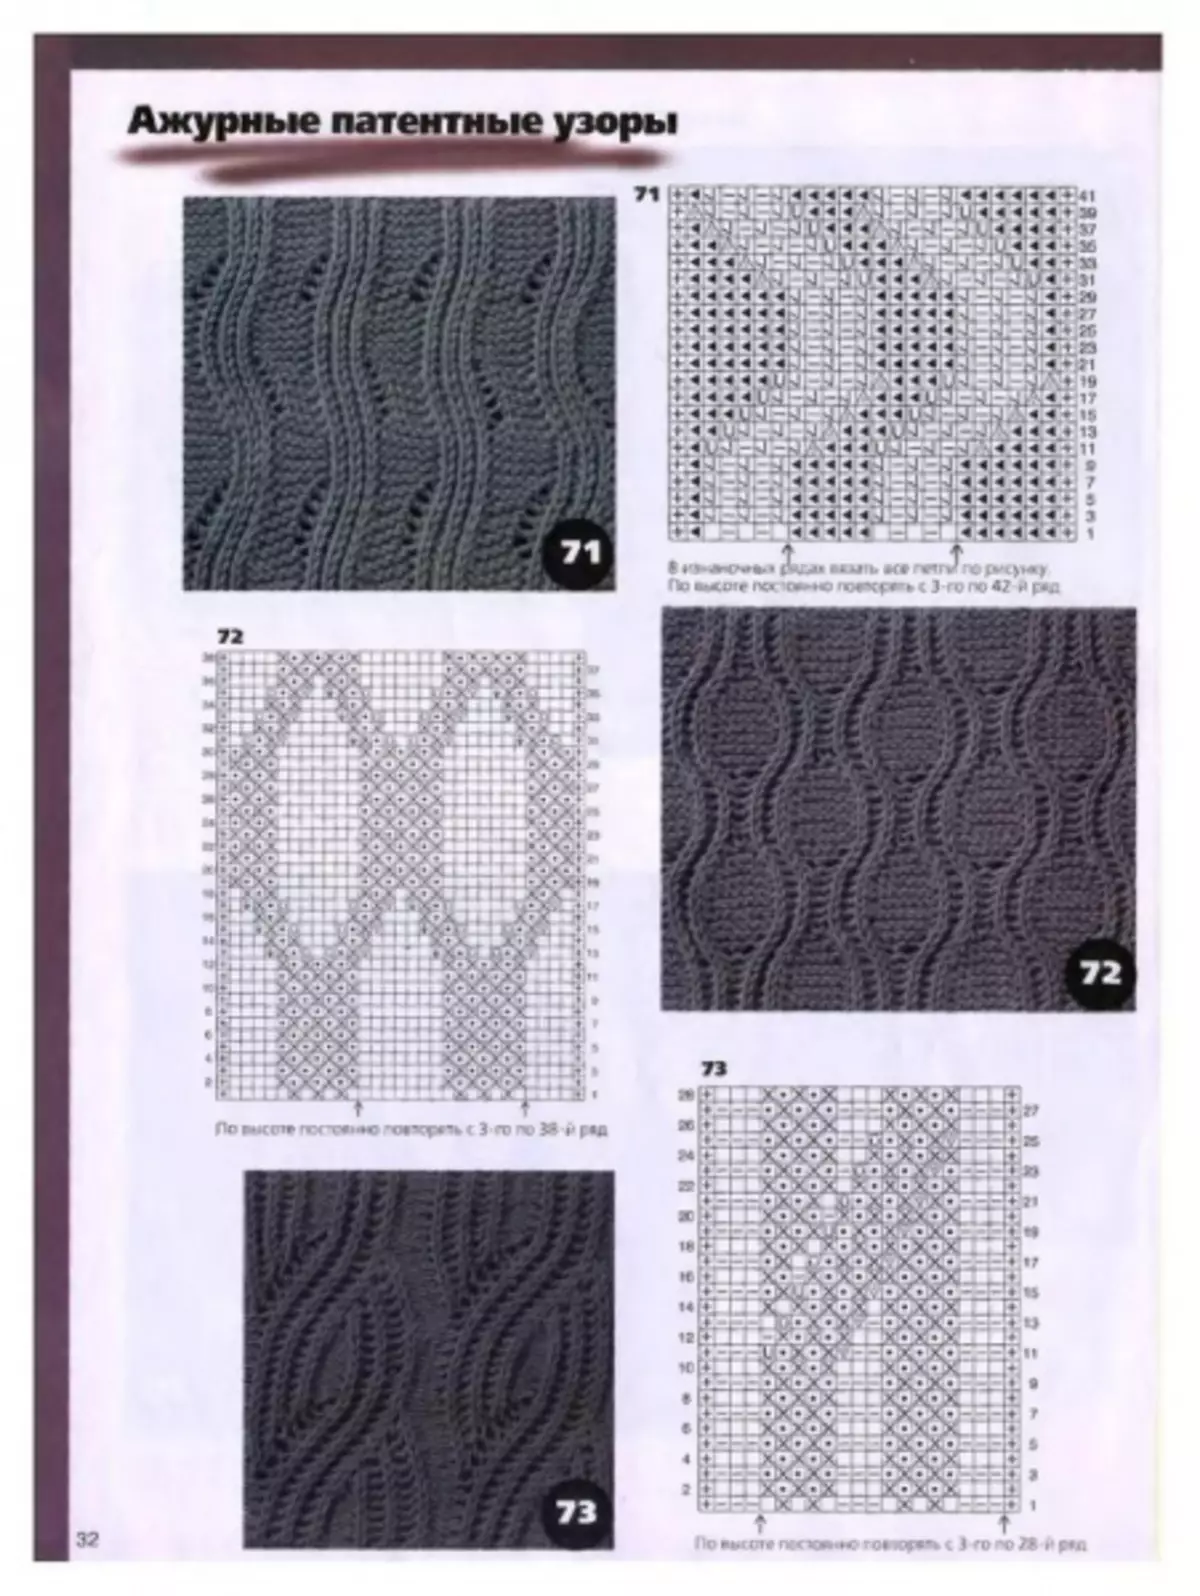 Gomme de brevet avec tricot avec des diagrammes et des descriptions dans un cercle